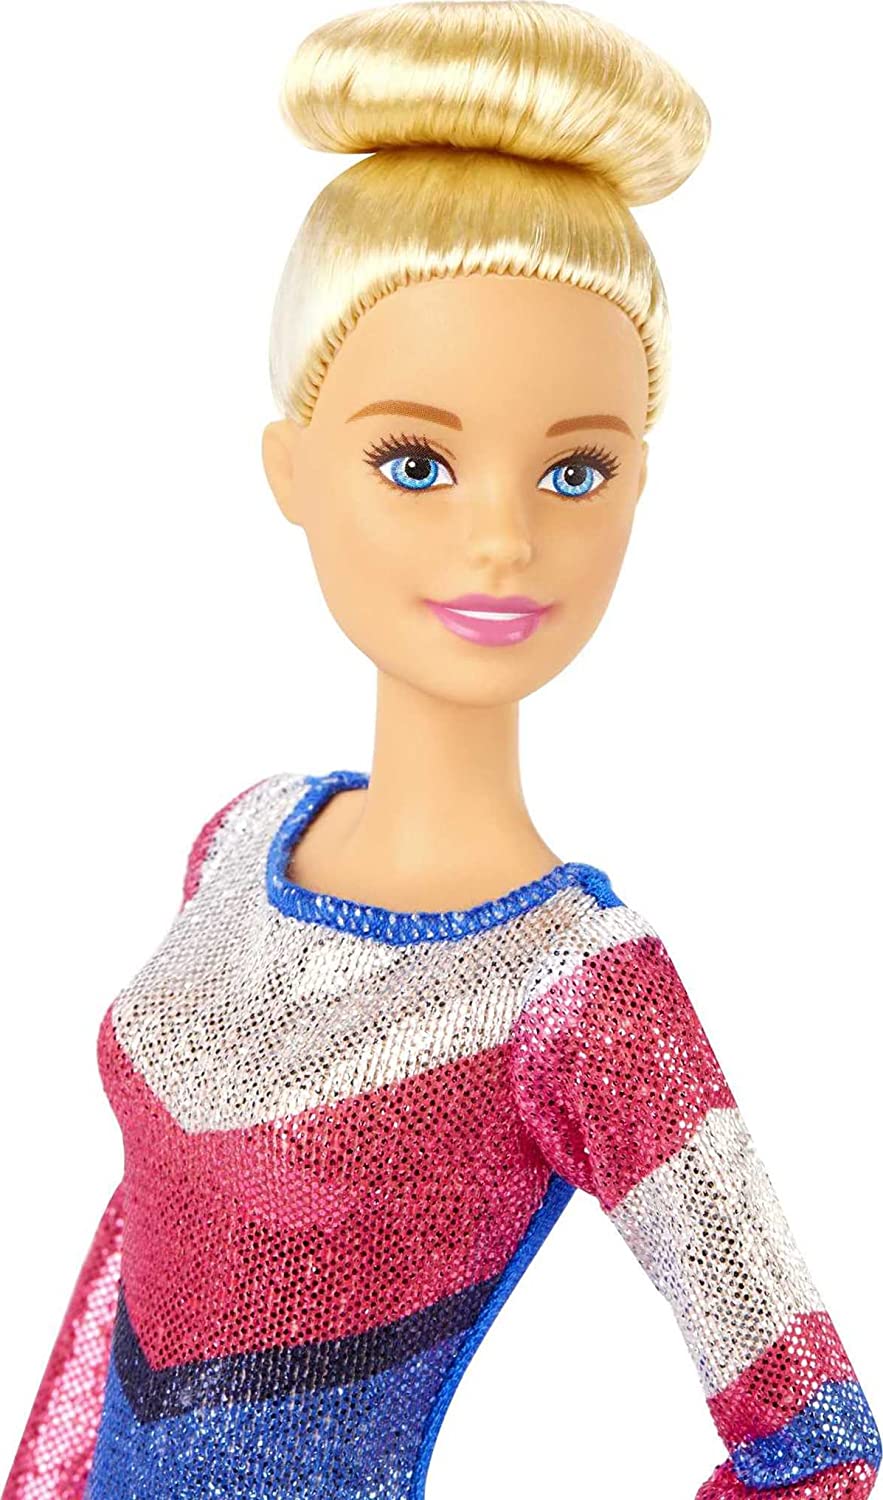 Barbie Gymnastic Playset | Barbie